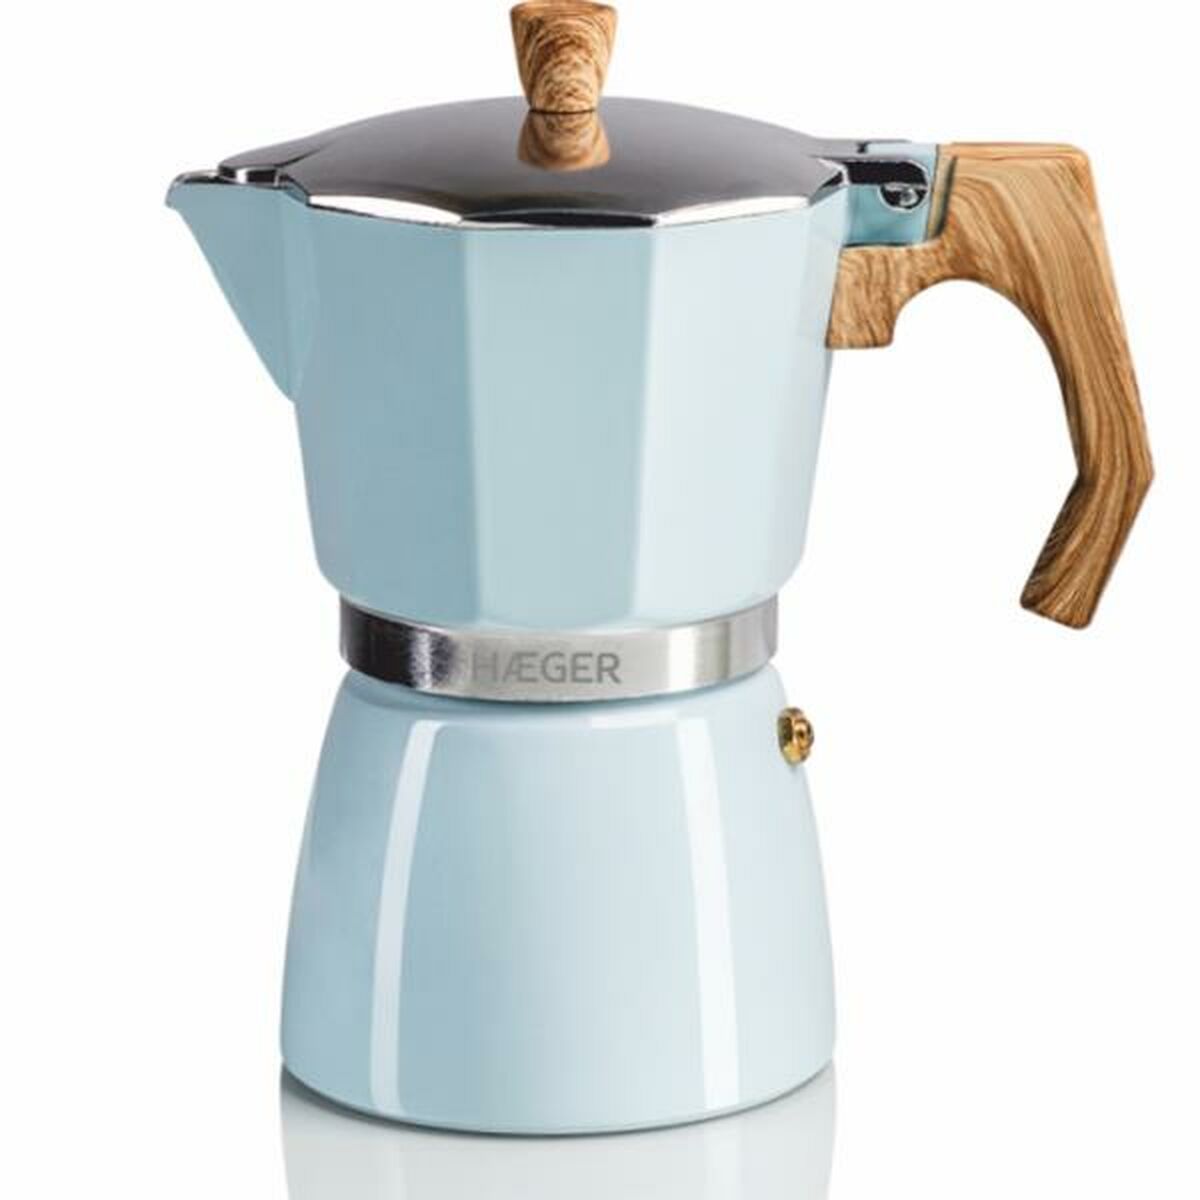 Italian Kaffekanne Haeger CP-06A.011A